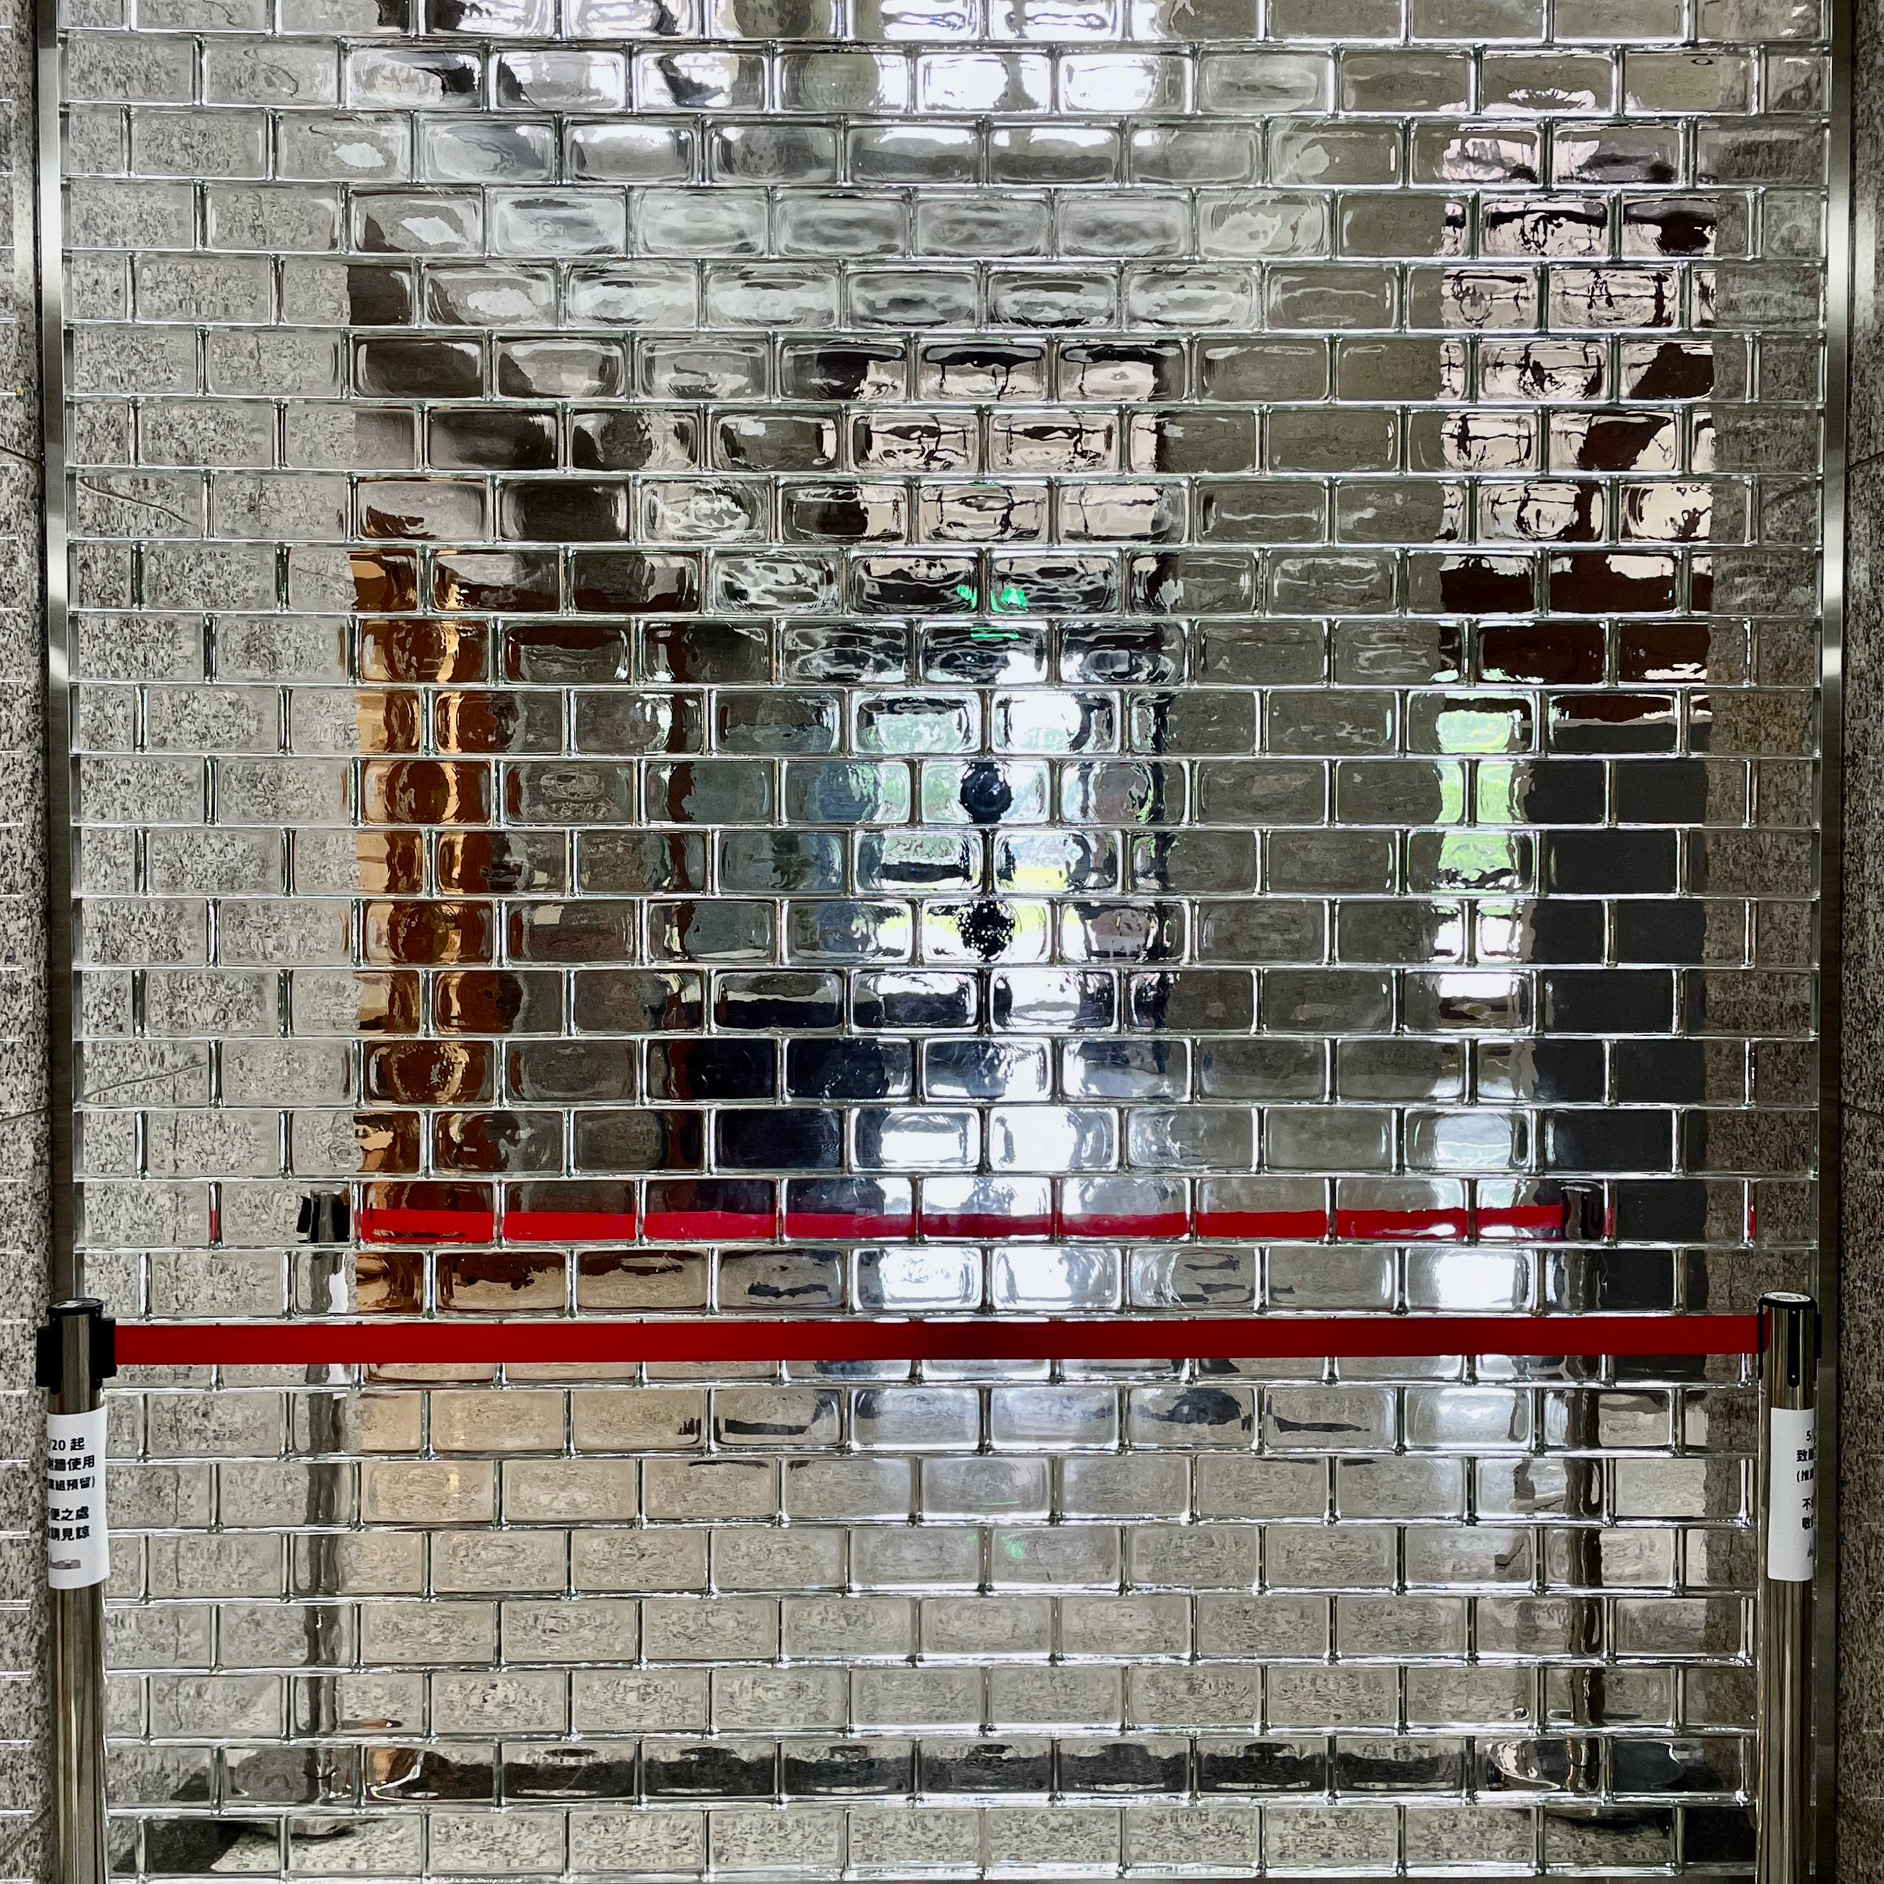 施工建材：水波紋實心玻璃磚
工法：立砌式
款式：透明